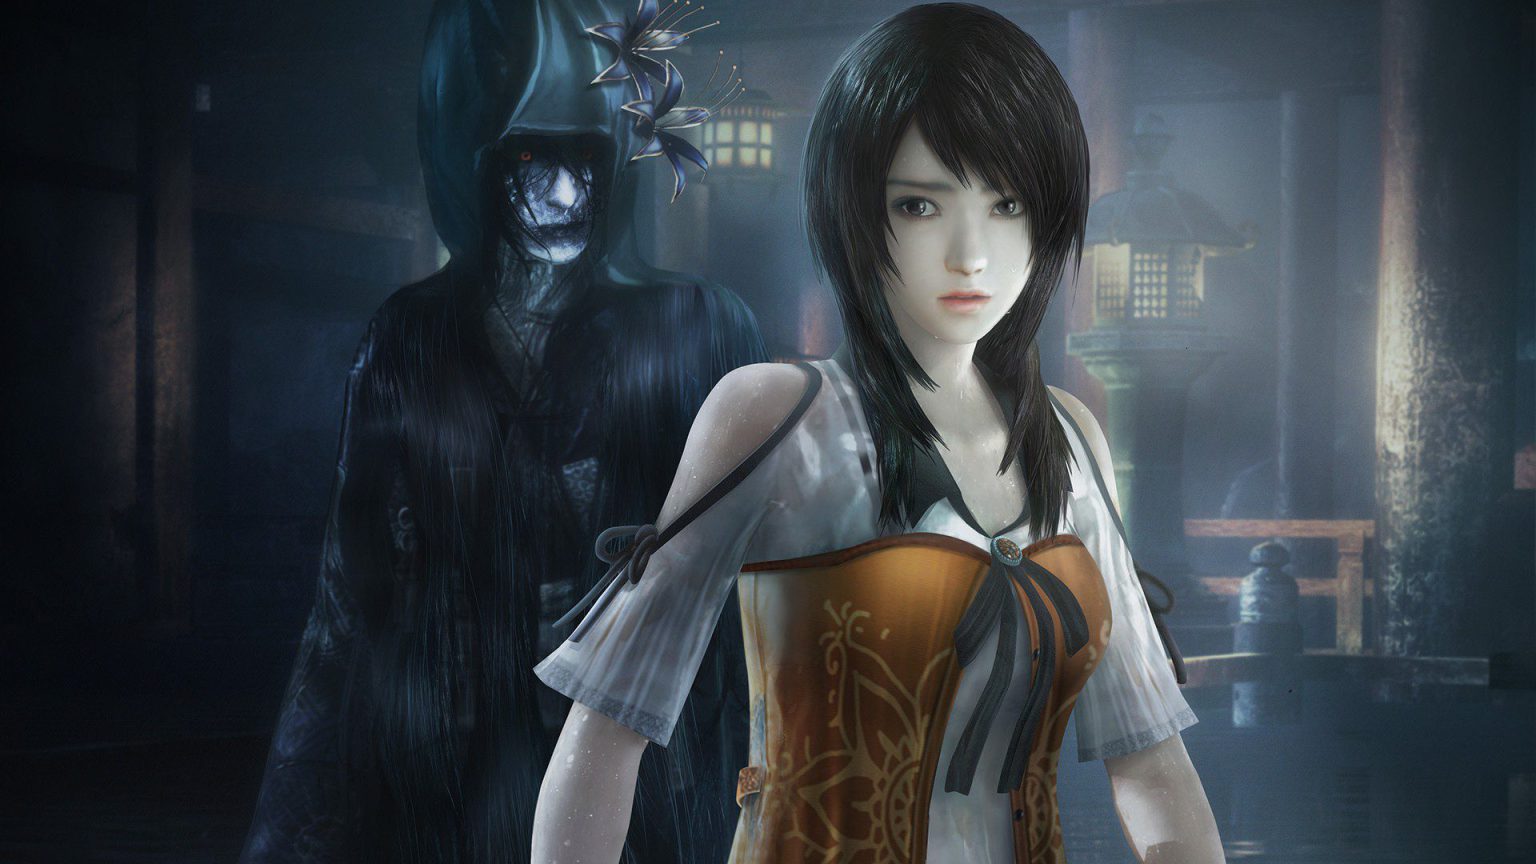 Analizamos Project Zero: Maiden of Black Water para Xbox Series X, el terror japonés inunda tu consola.